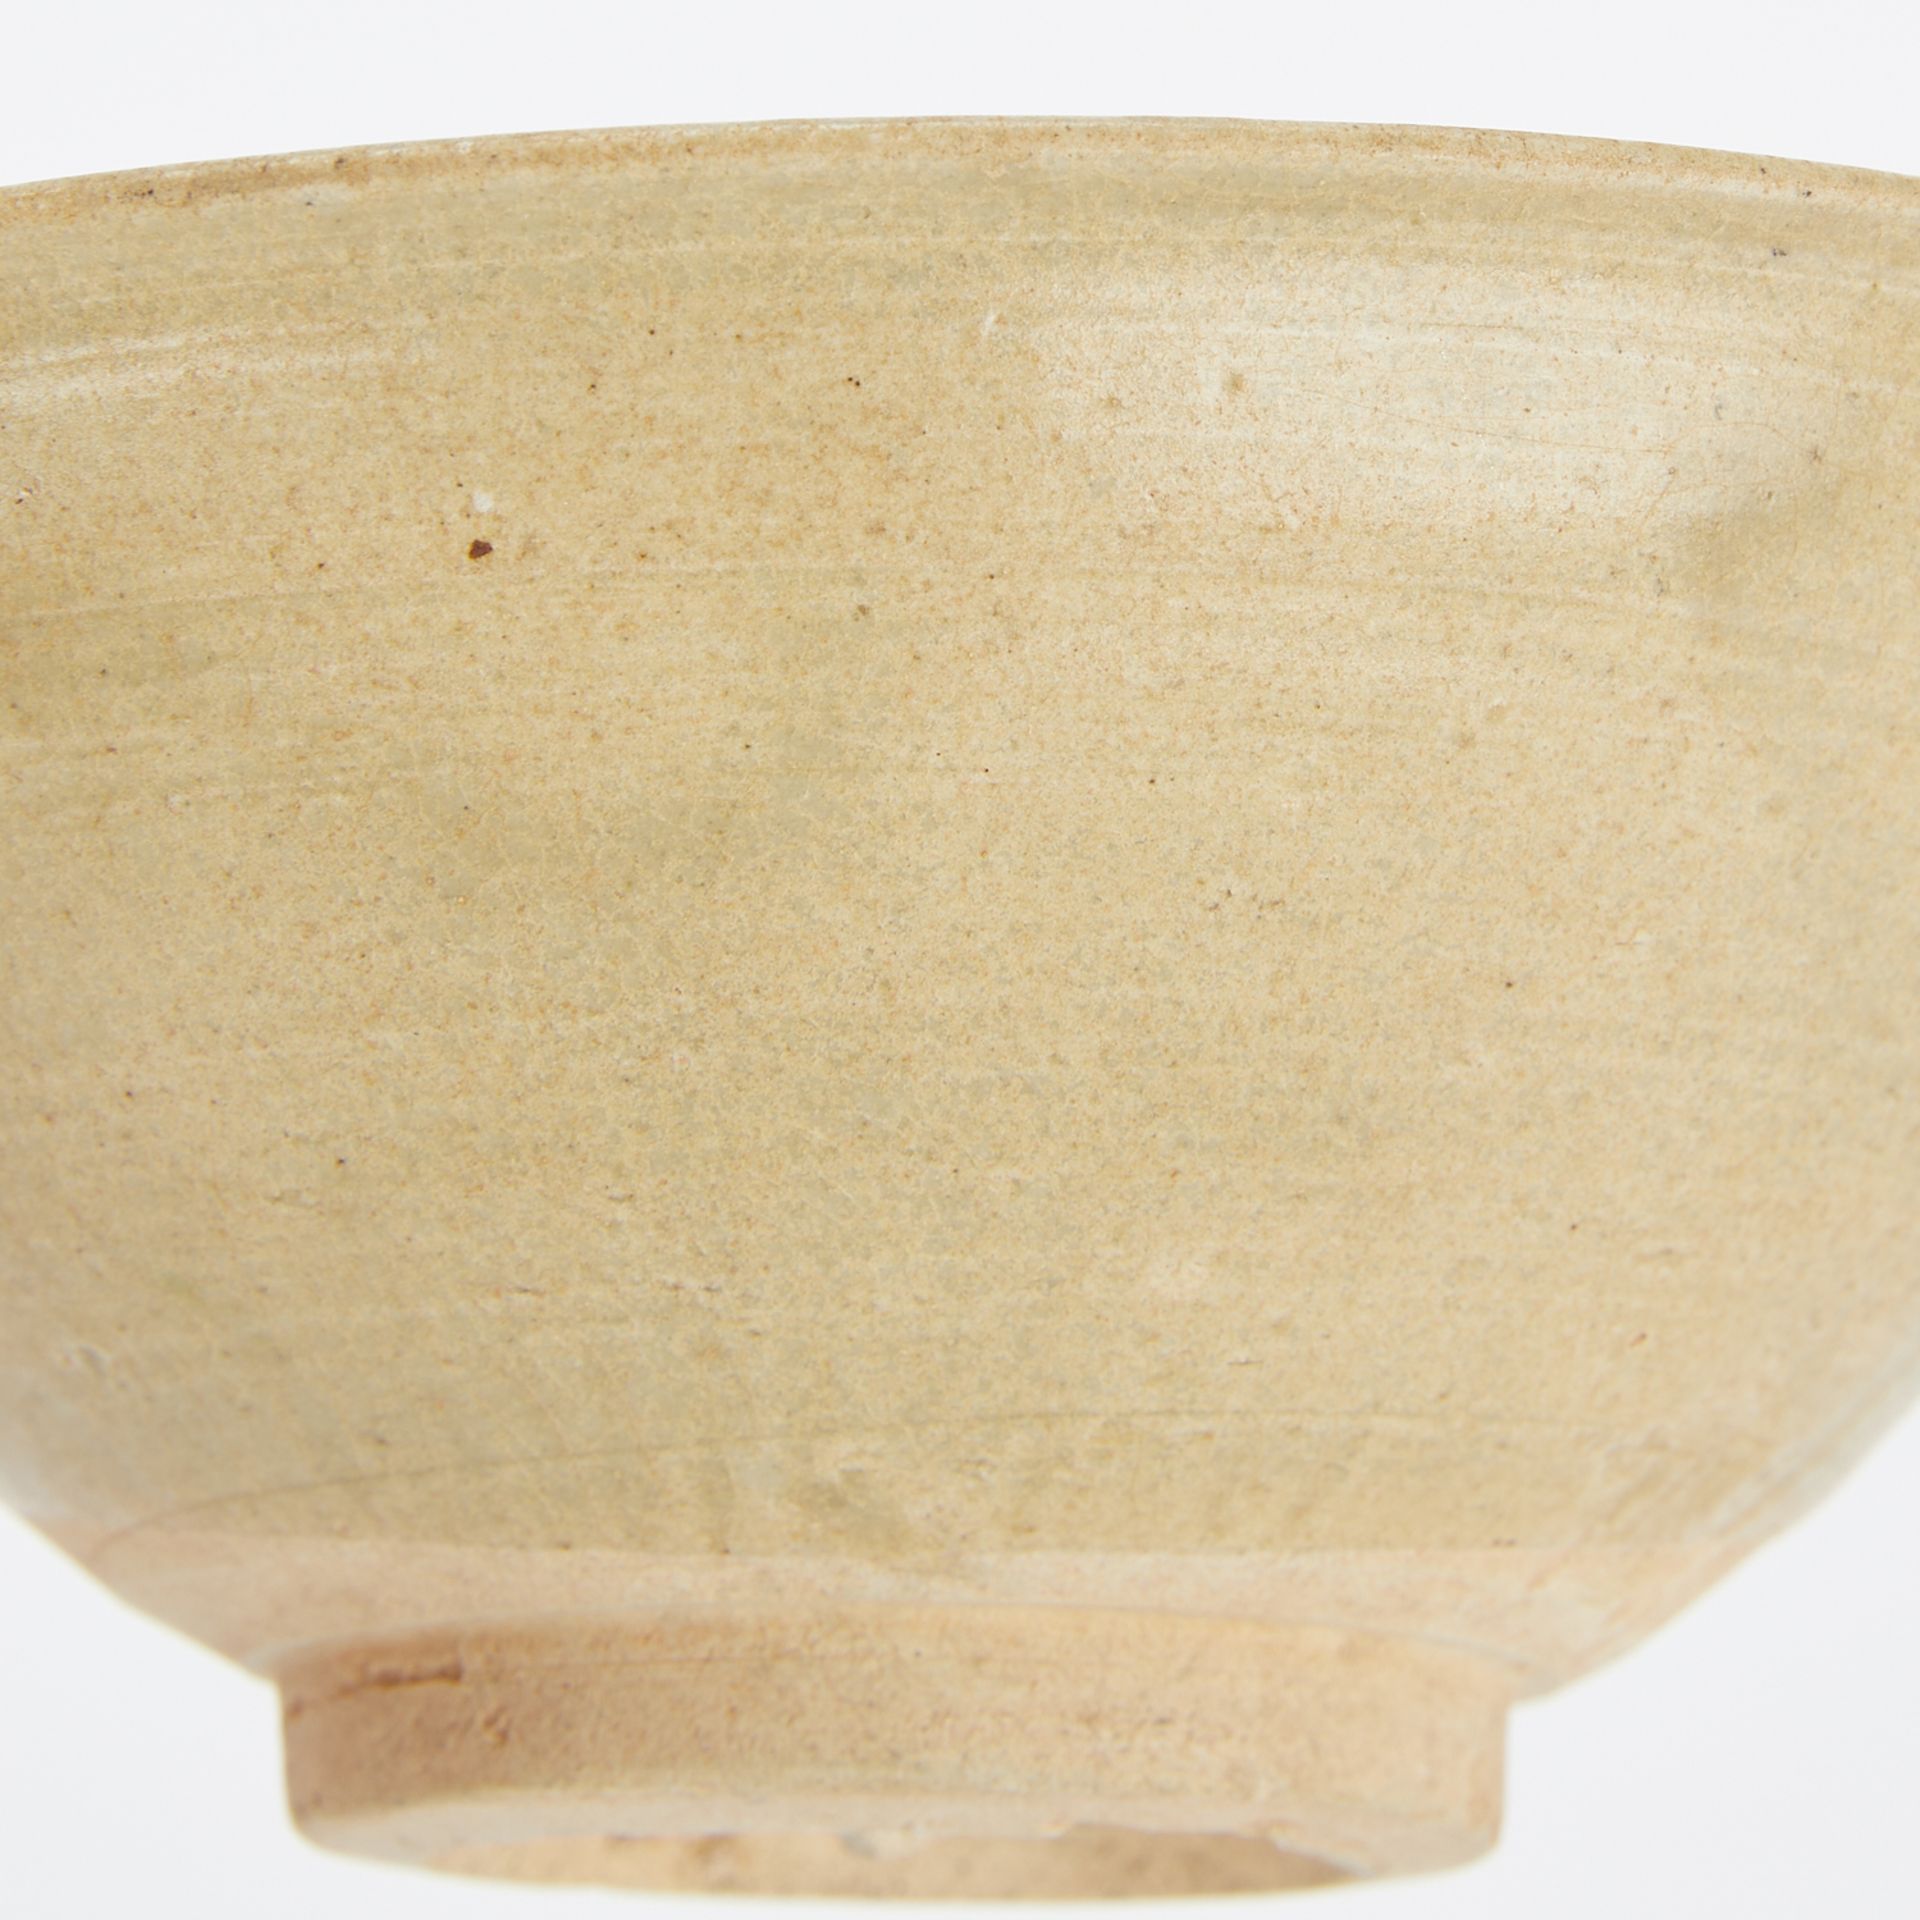 Chinese Song Celadon Glazed Ceramic Bowl - Image 8 of 8